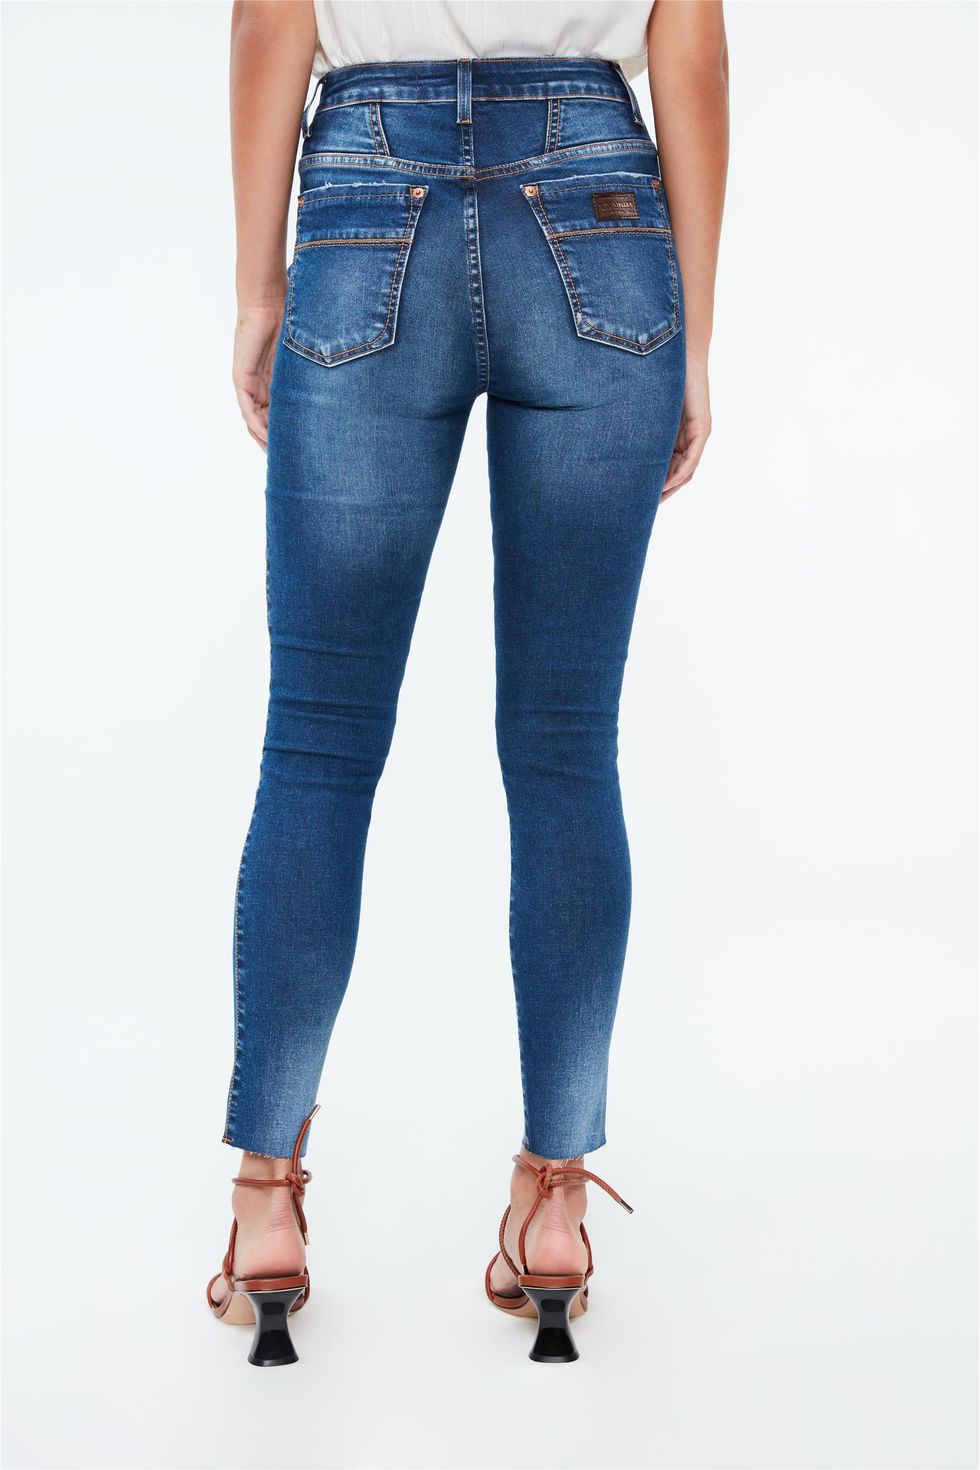 jeans jegging